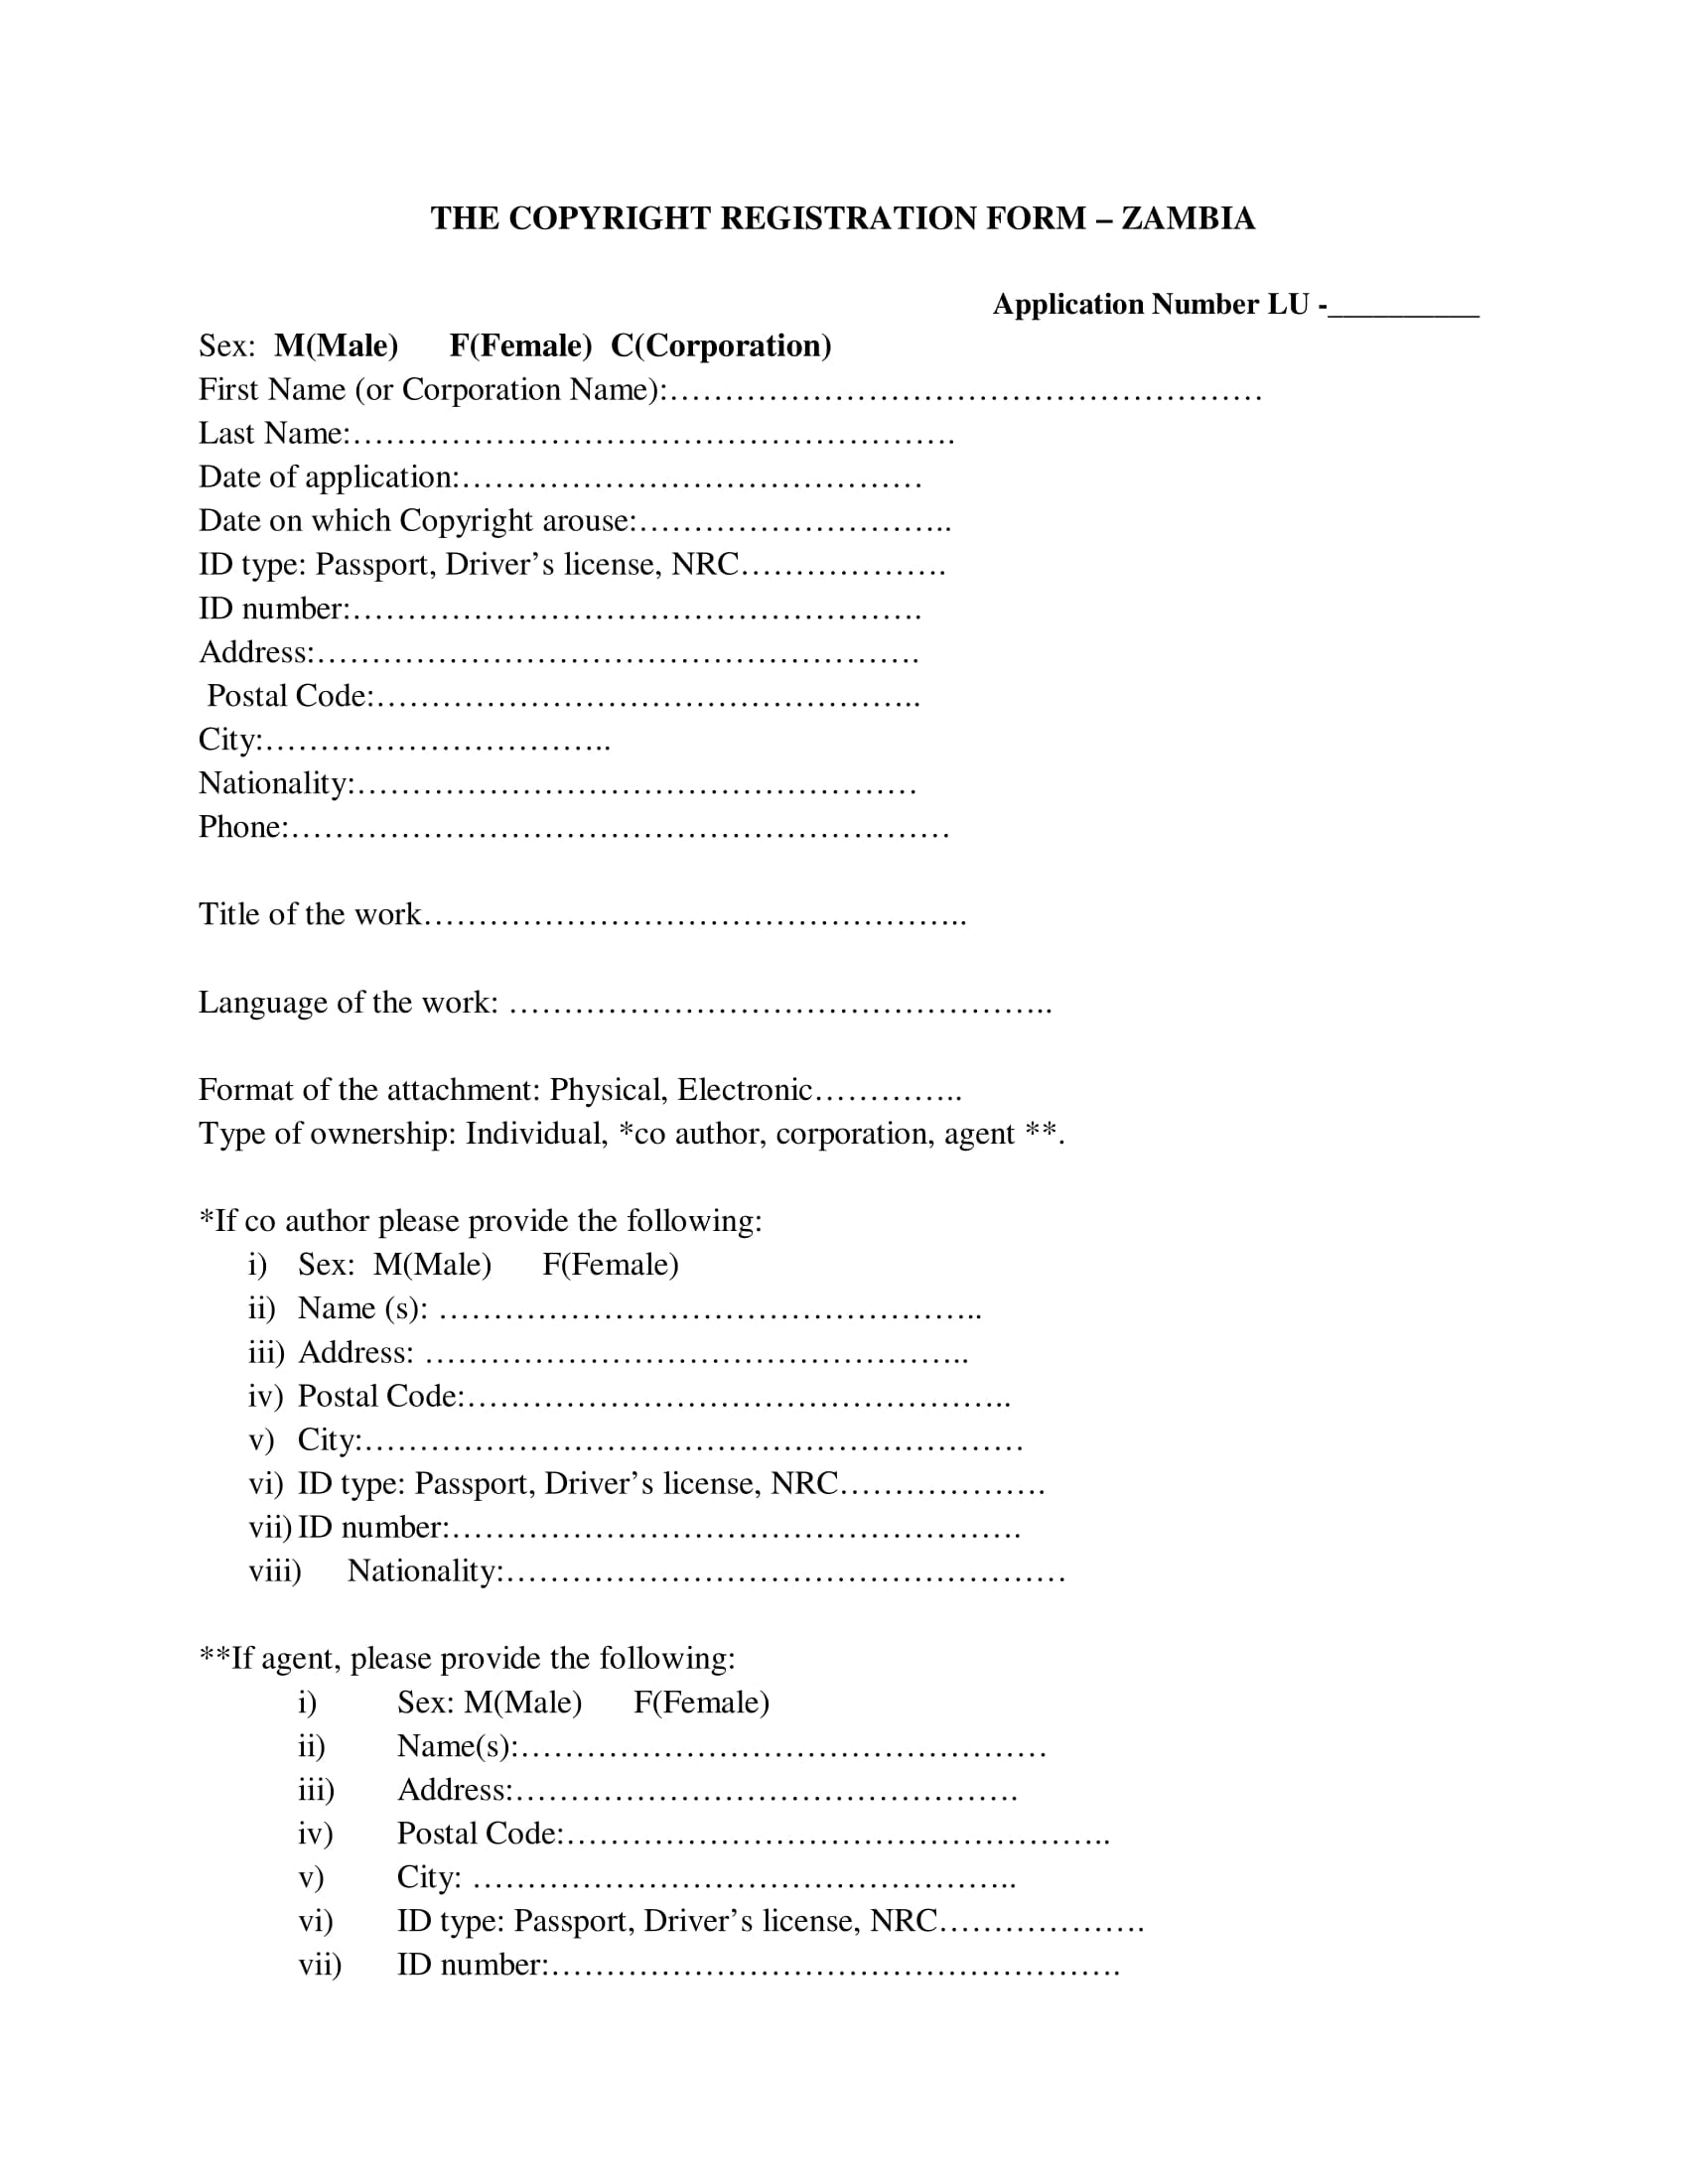 copyright registration form sample 1